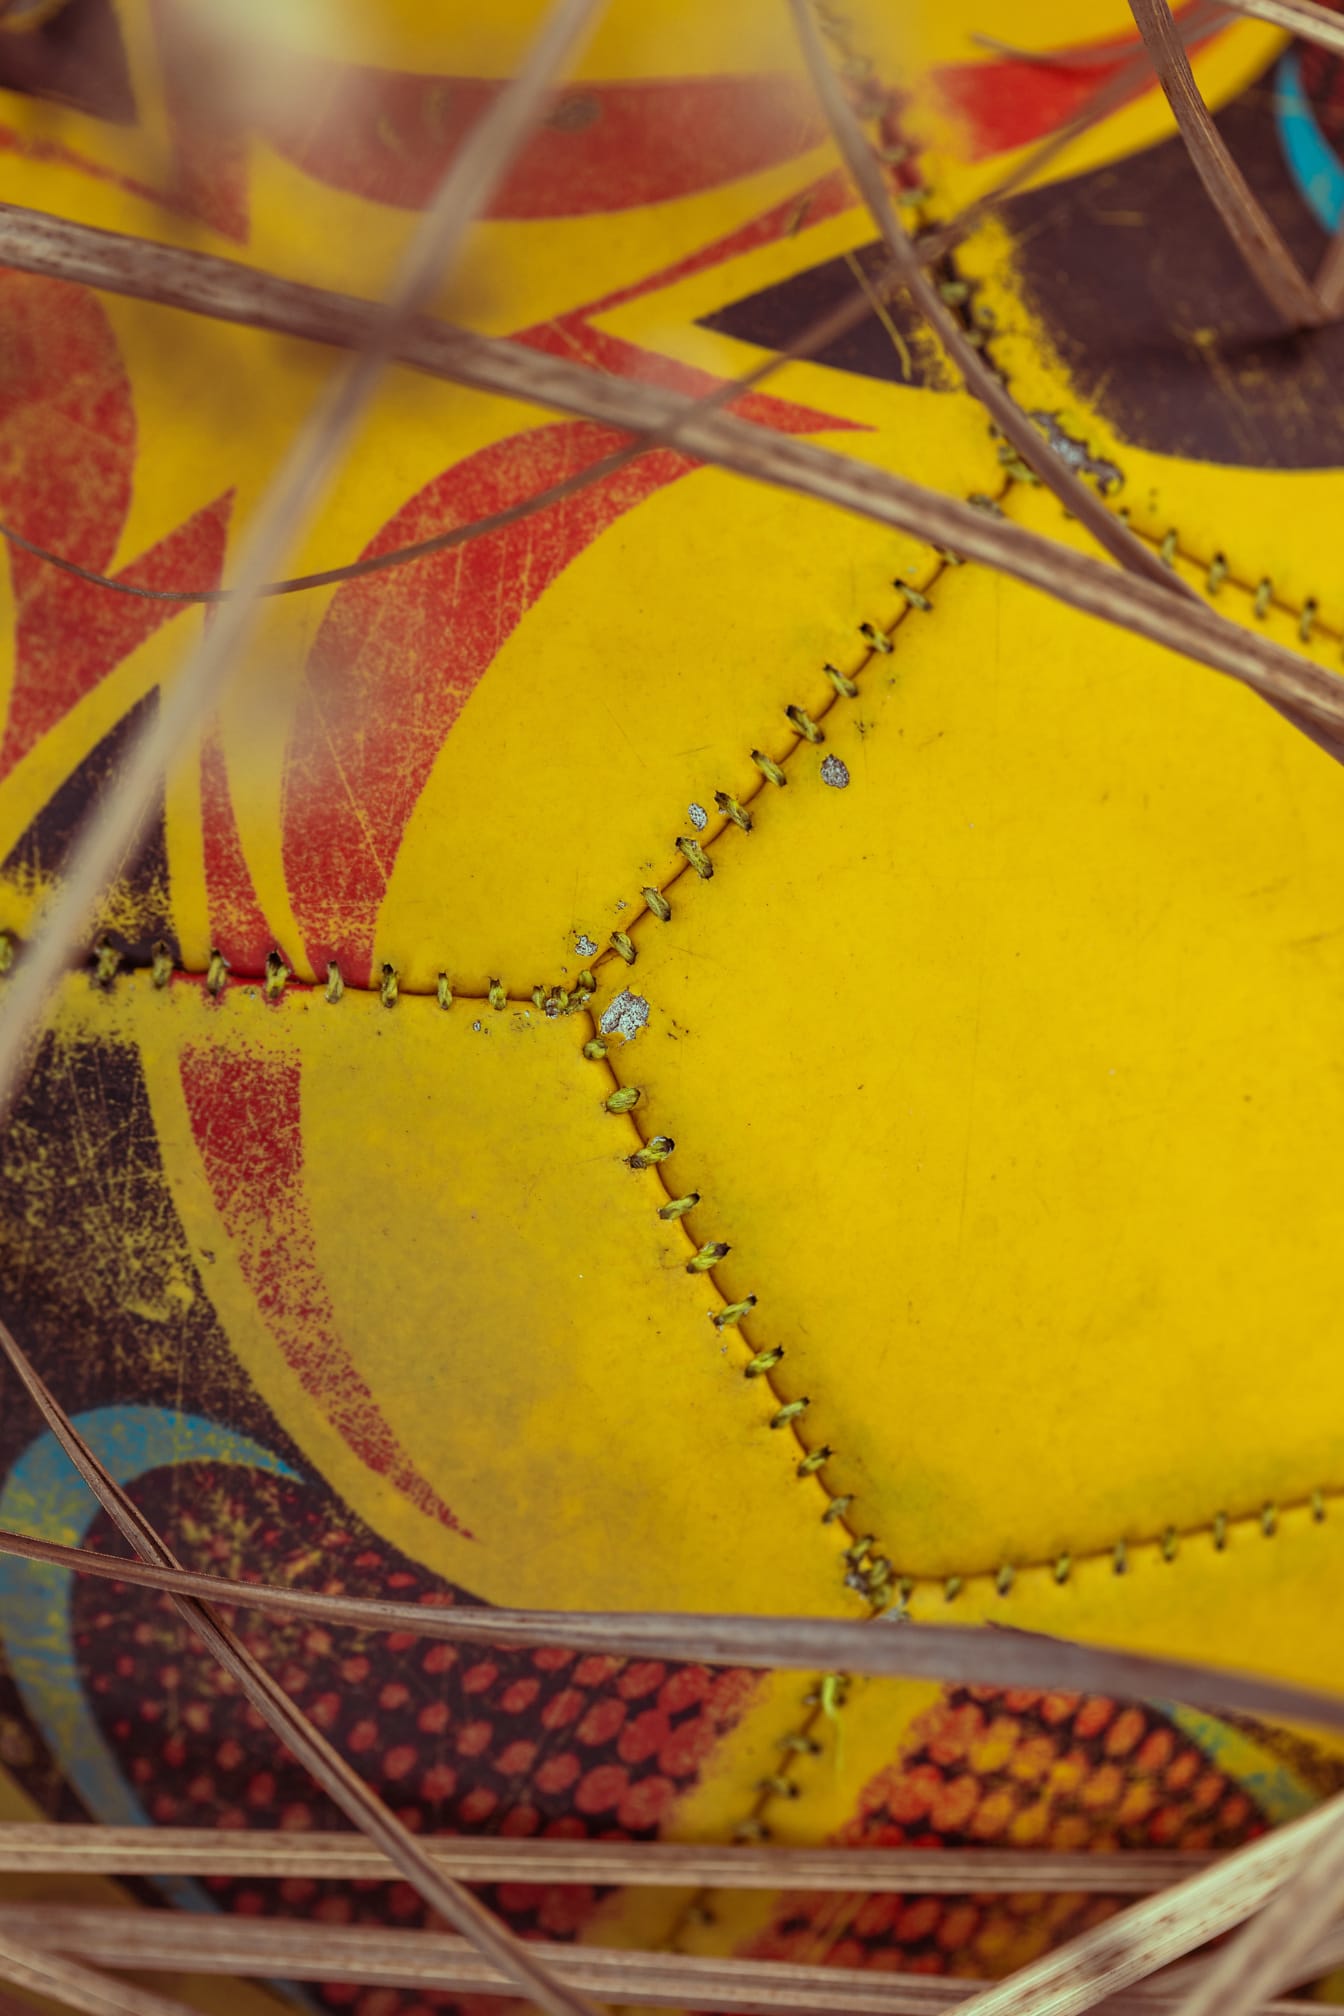 Primer plano de la pelota de fútbol Nike amarillo anaranjado en la red